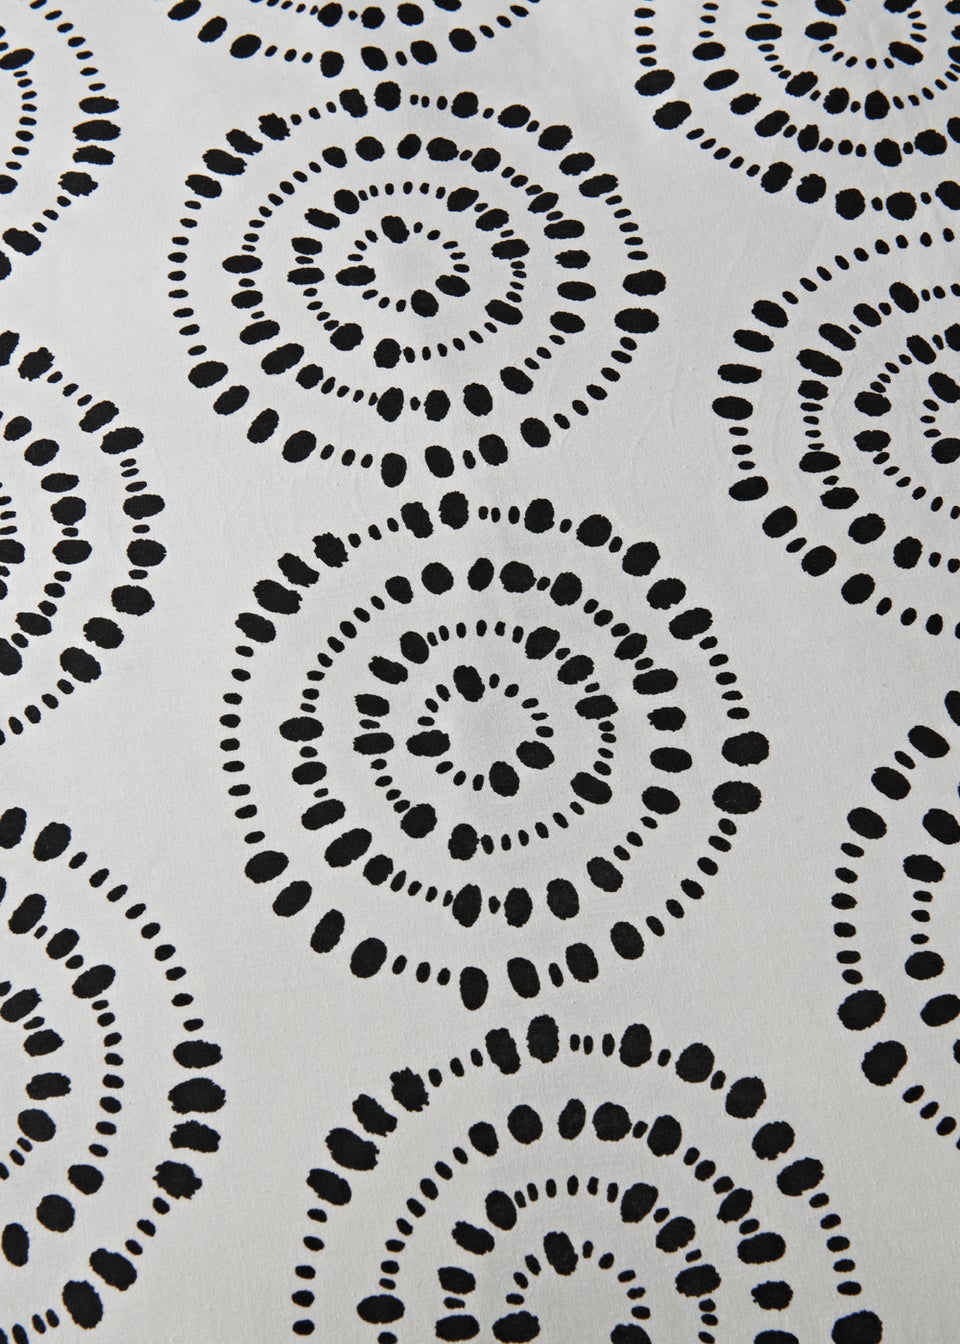 Monochrome Mark Making Duvet Cover